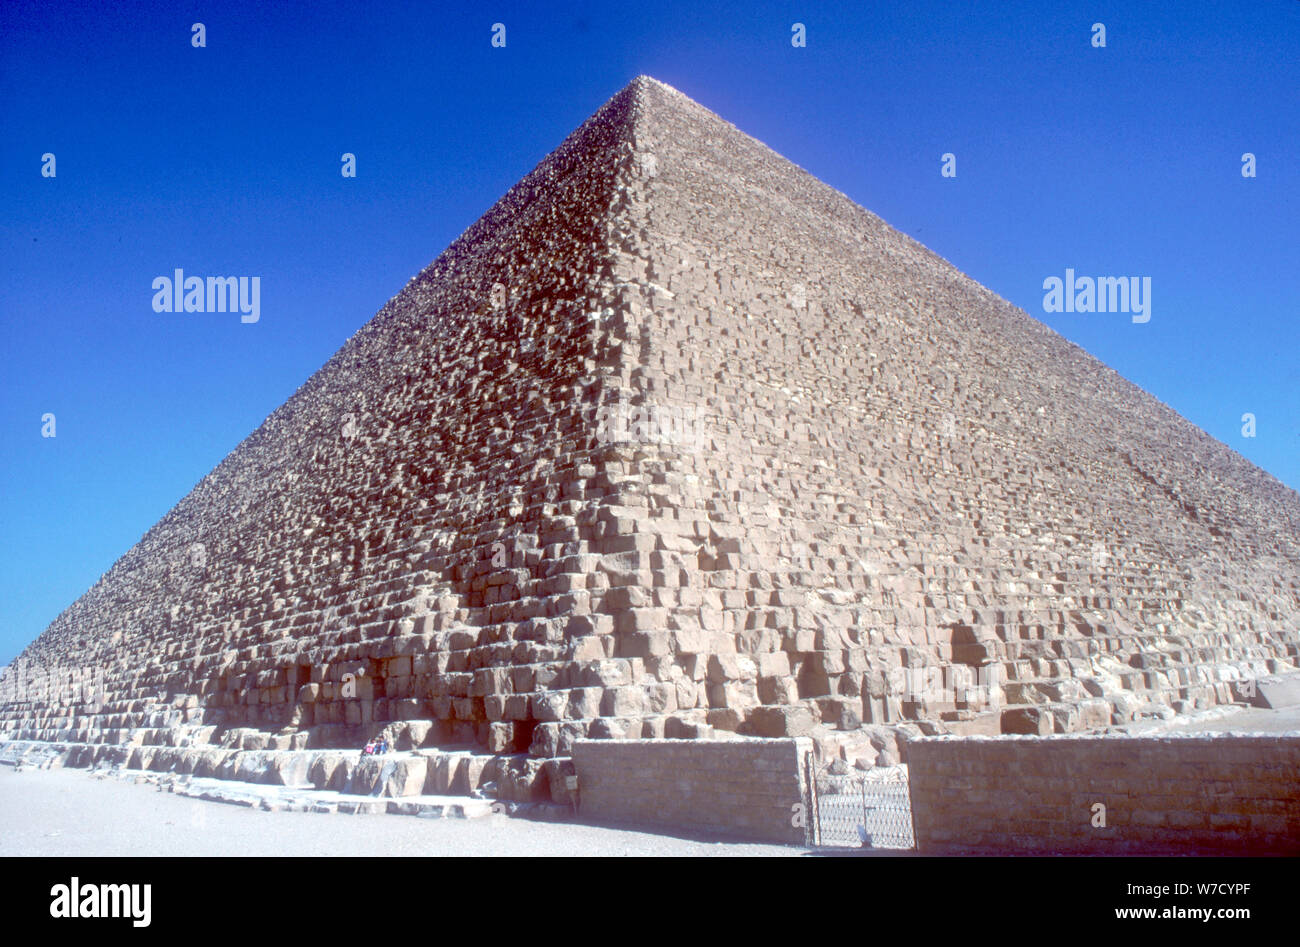 Pyramide de Chéops (Khéops), Giza, Egypte, 4ème dynastie, 26ème siècle avant J.-C.. Artiste : Inconnu Banque D'Images